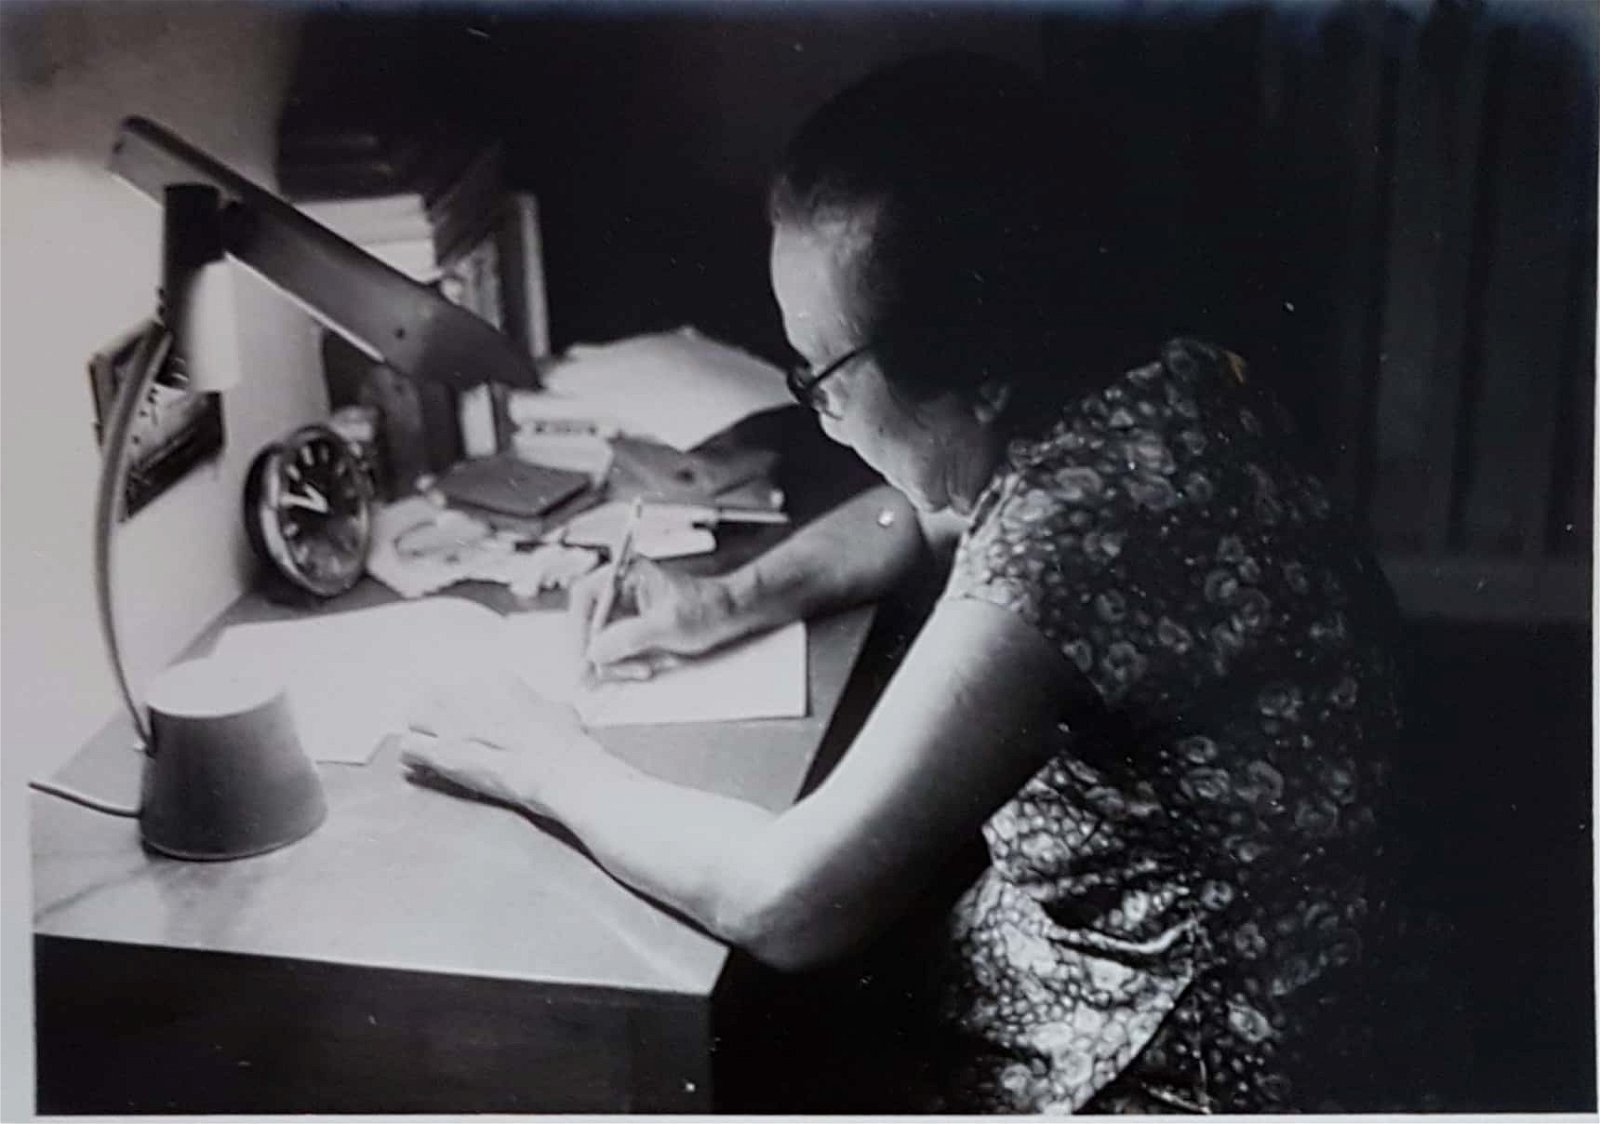 开著桌灯，埋头写文章是陈瑜莹对祖母最深刻的印象。“几乎每天晚上，当祖母完成一天的工作后，便会把情绪化成文字。”